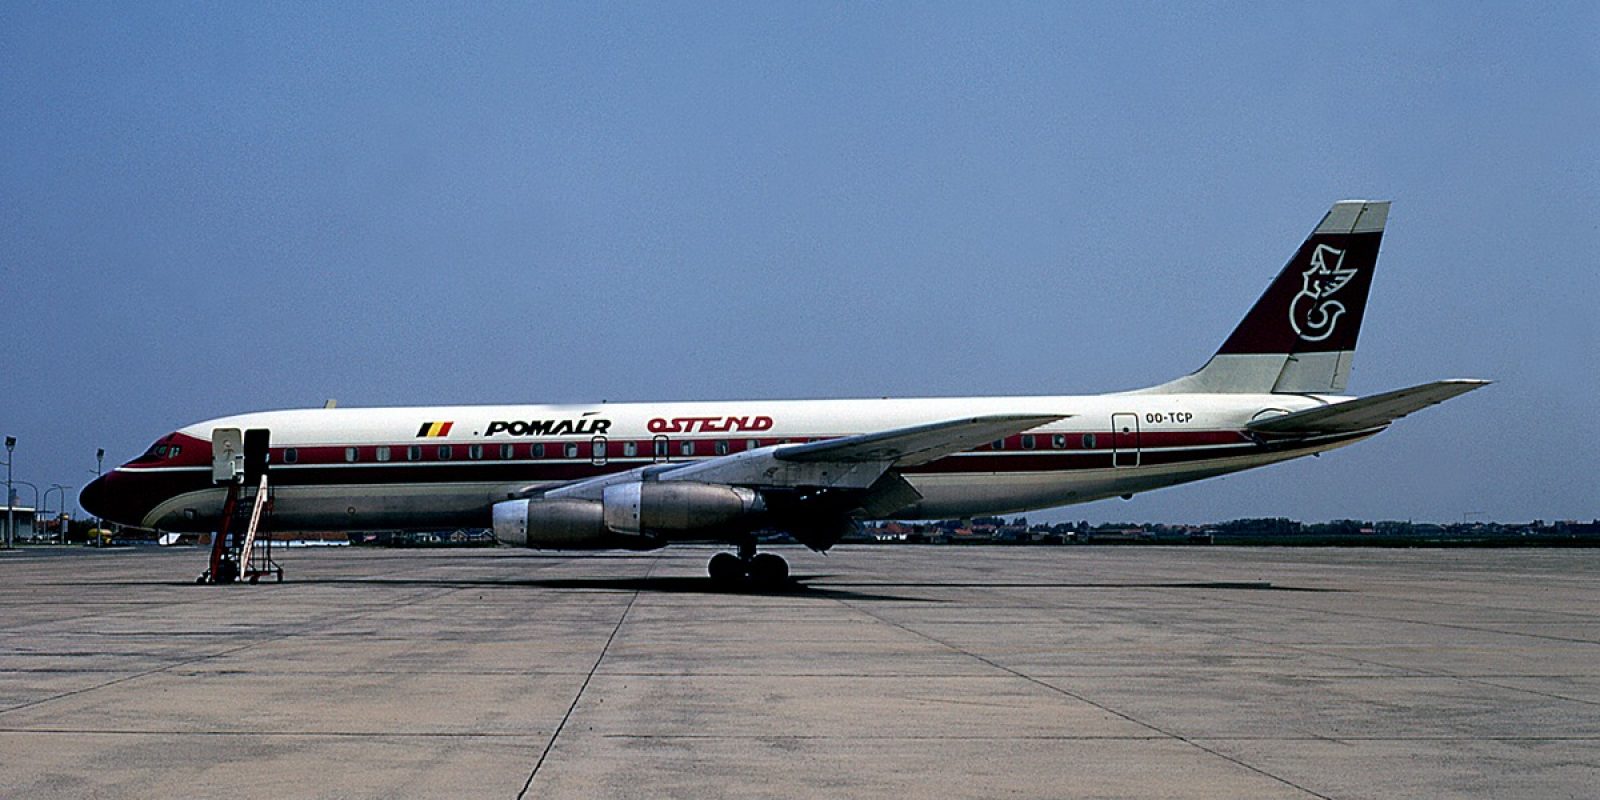 L’événement historique est l’arrivée à Ostende du premier jet intercontinental de Pomair en mai 1971. Immatriculé (en référence à Transports Charles Pommé) OO-TCP, le Douglas DC-8-33 (msn 45265) a été acquis auprès de la Pan American (ex N812PA) via la Boreas Corporation.